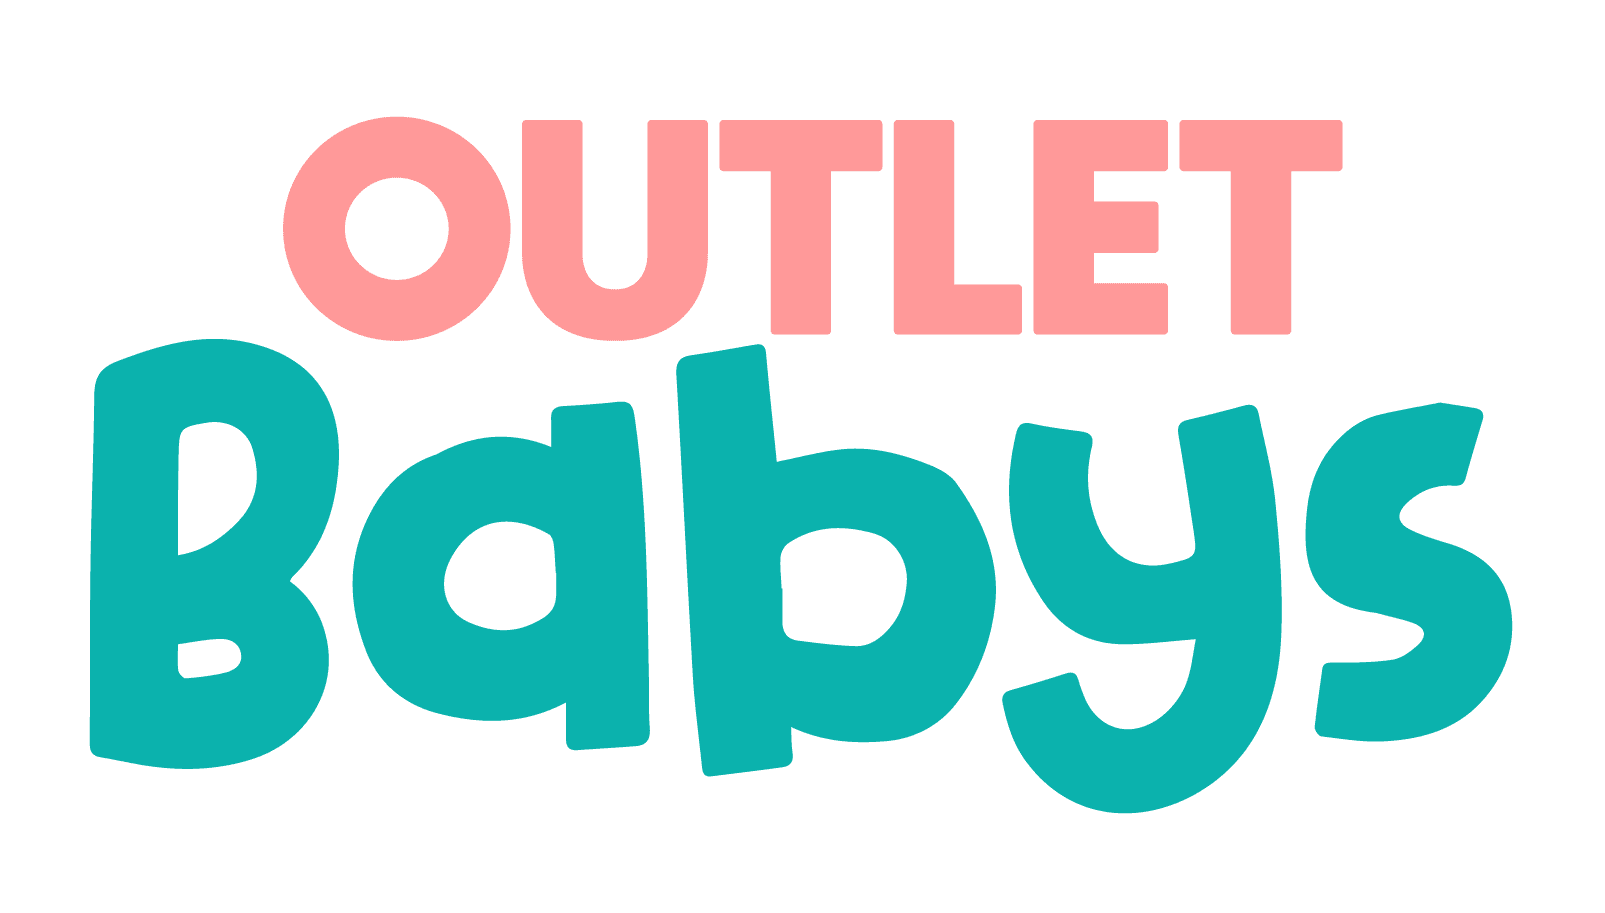 Outlet babys  Tudo que você precisa para o enxoval do seu bebê